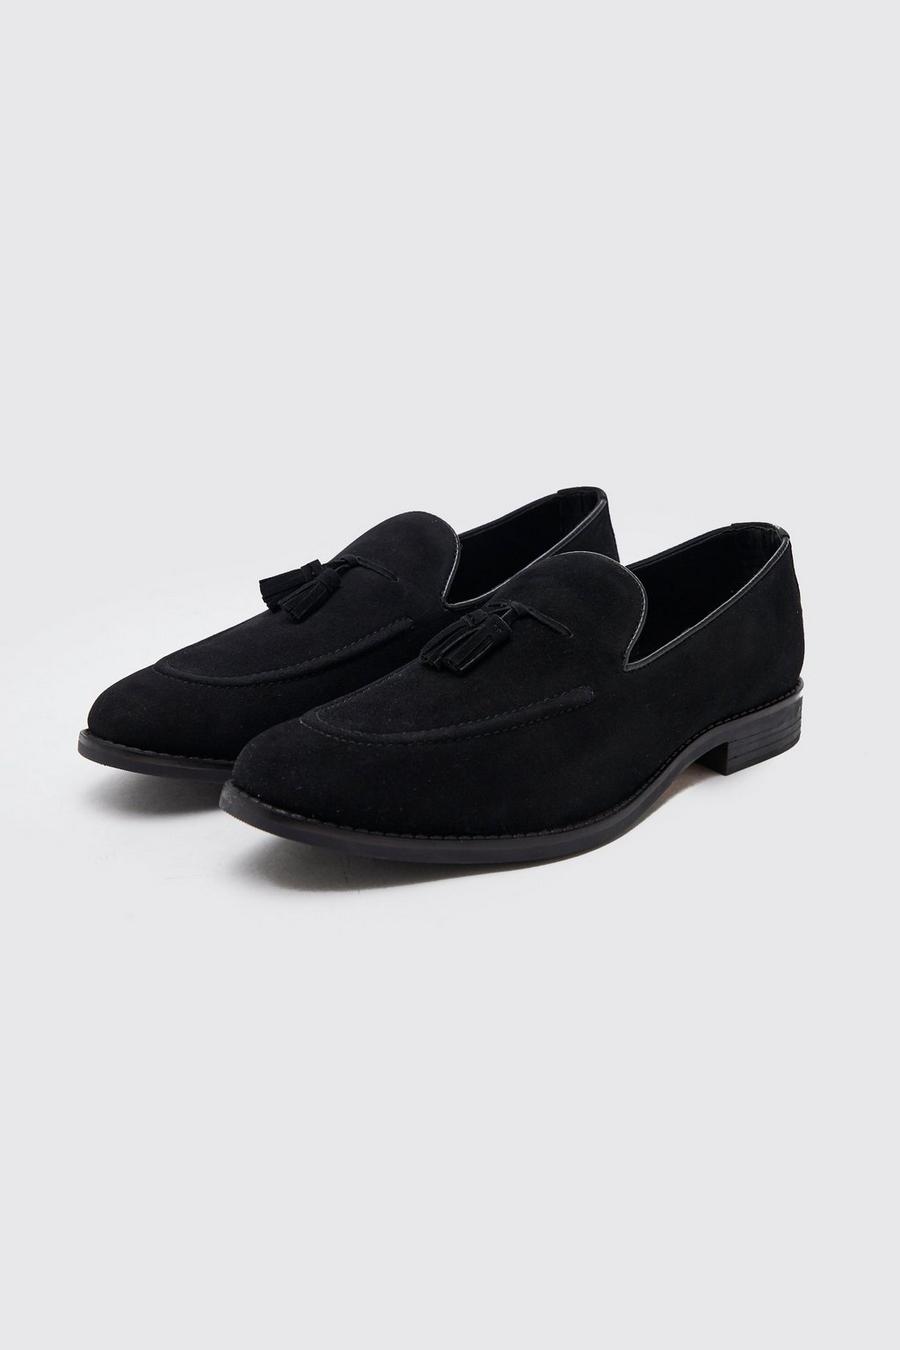 Black zapatillas de running amortiguación minimalista constitución fuerte talla 44.5 más de 100